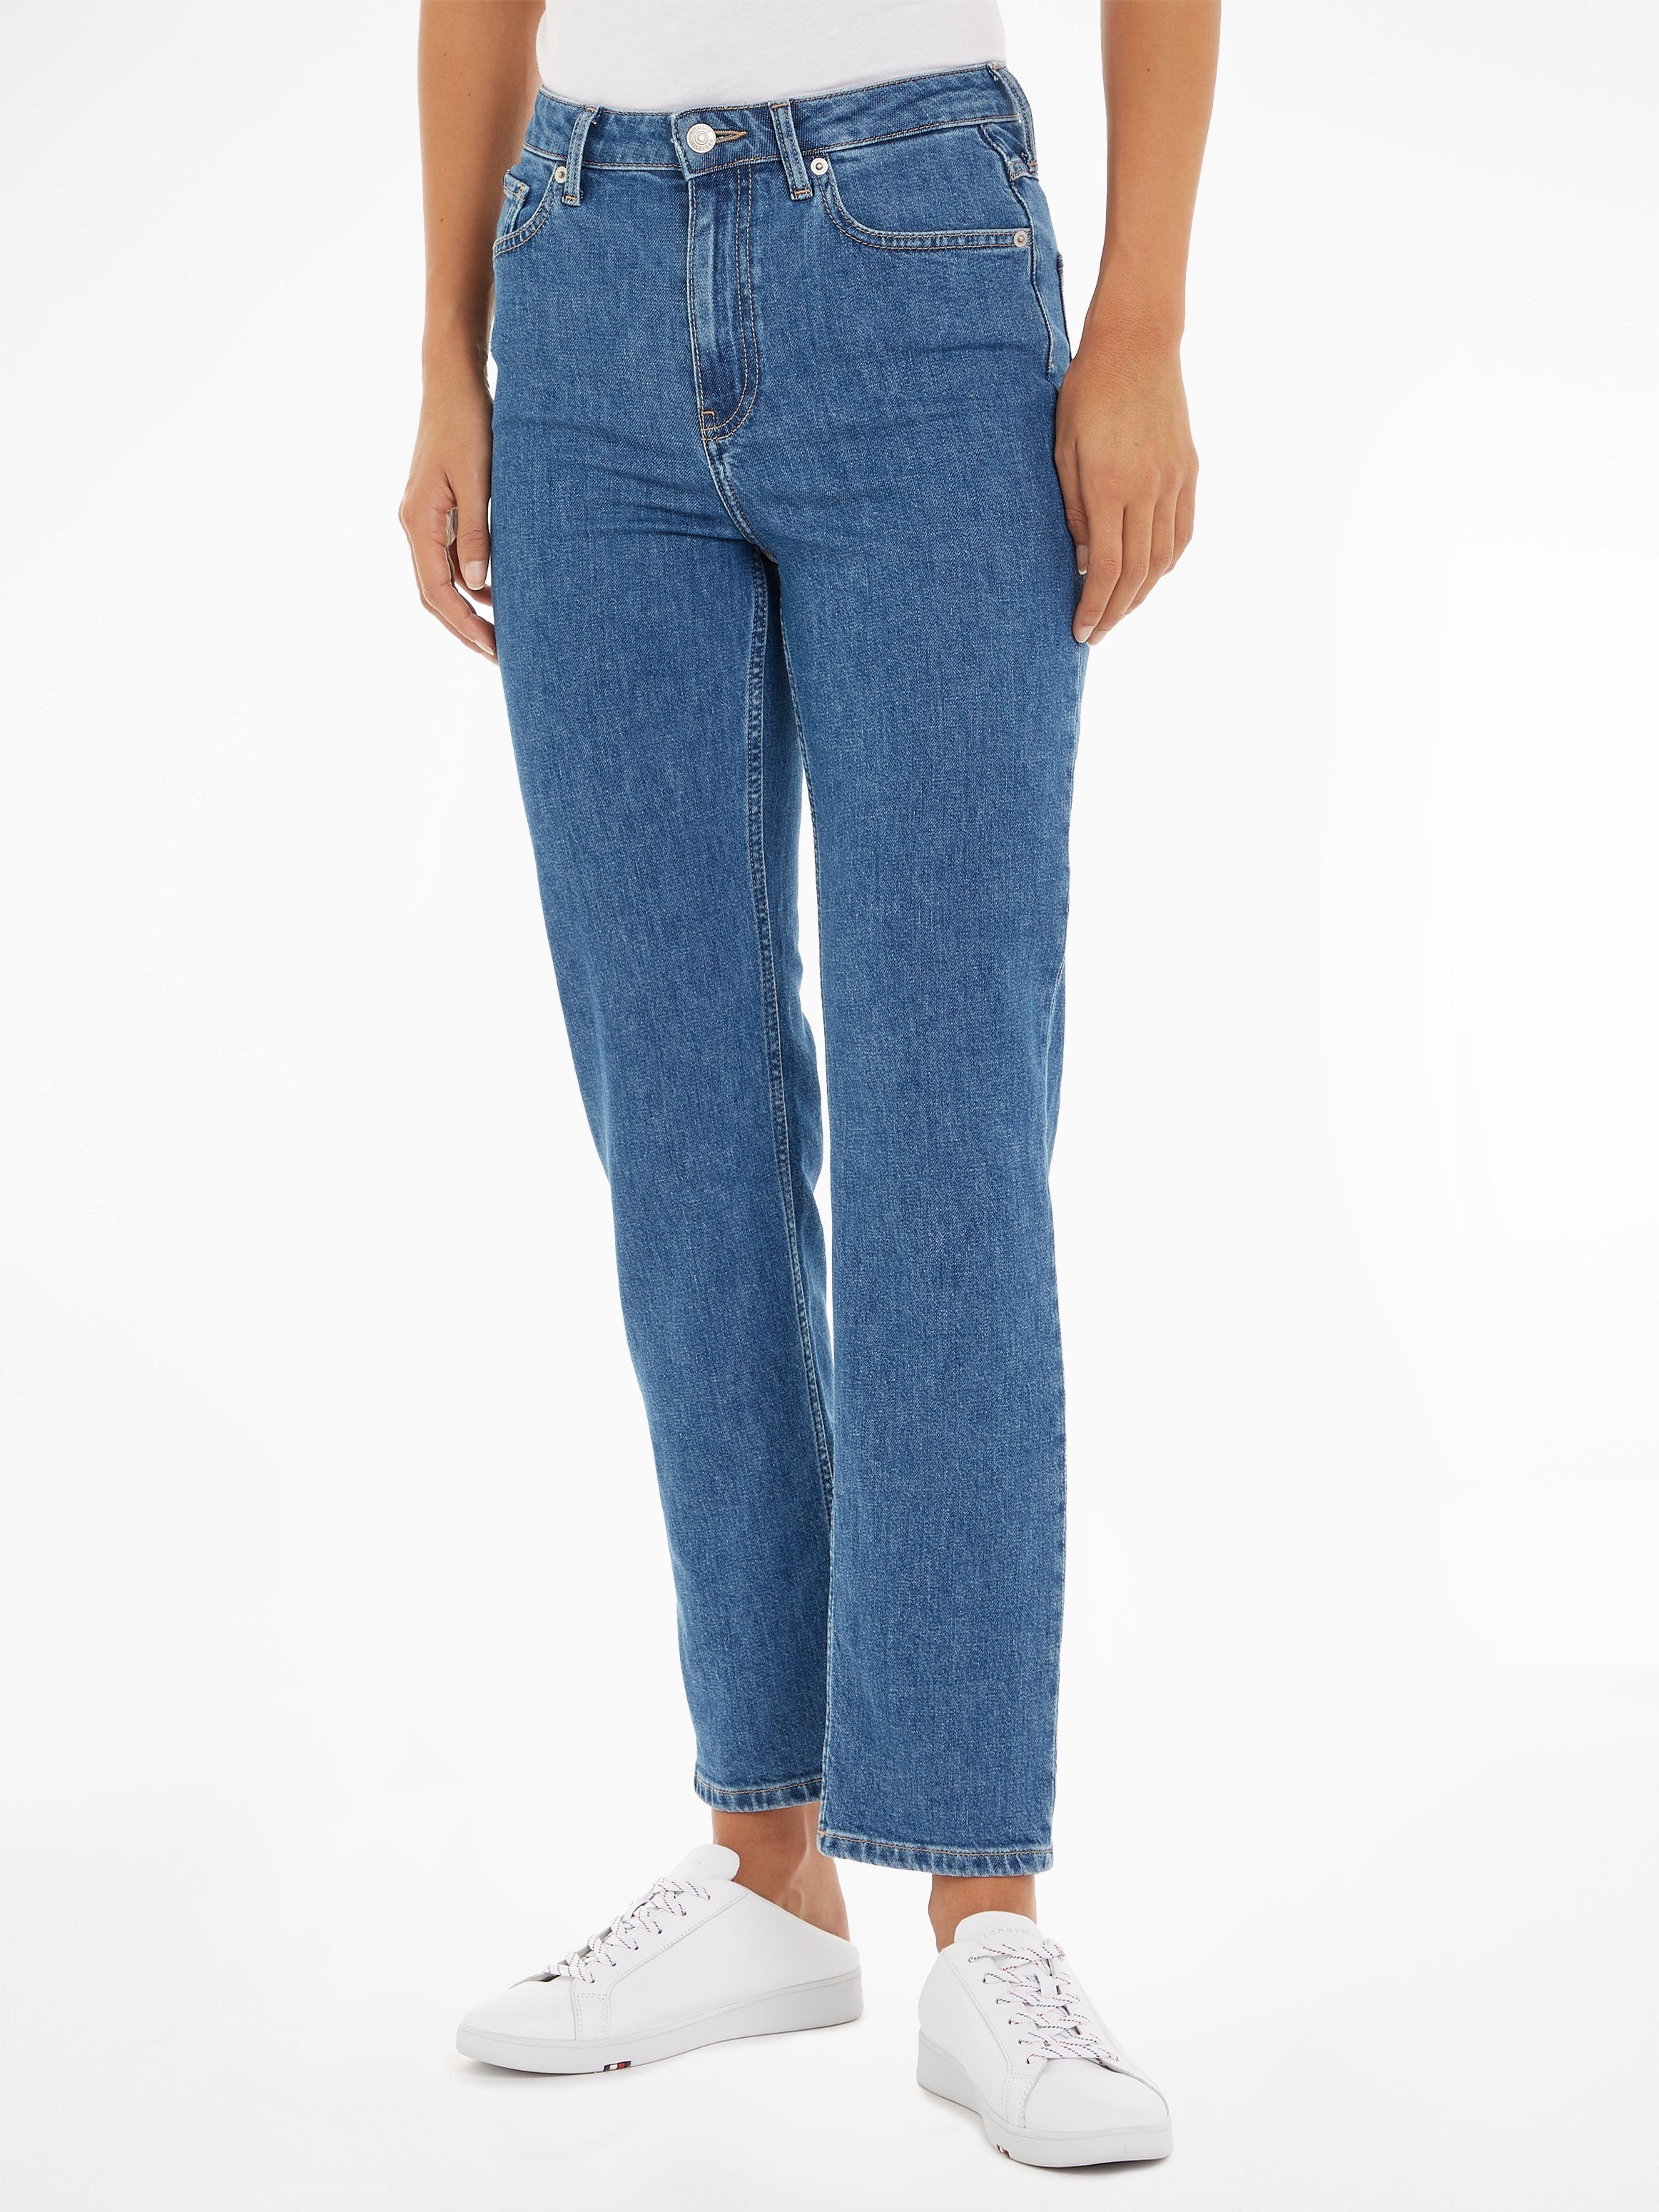 Knöchellange Jeans für Damen online kaufen OTTO 